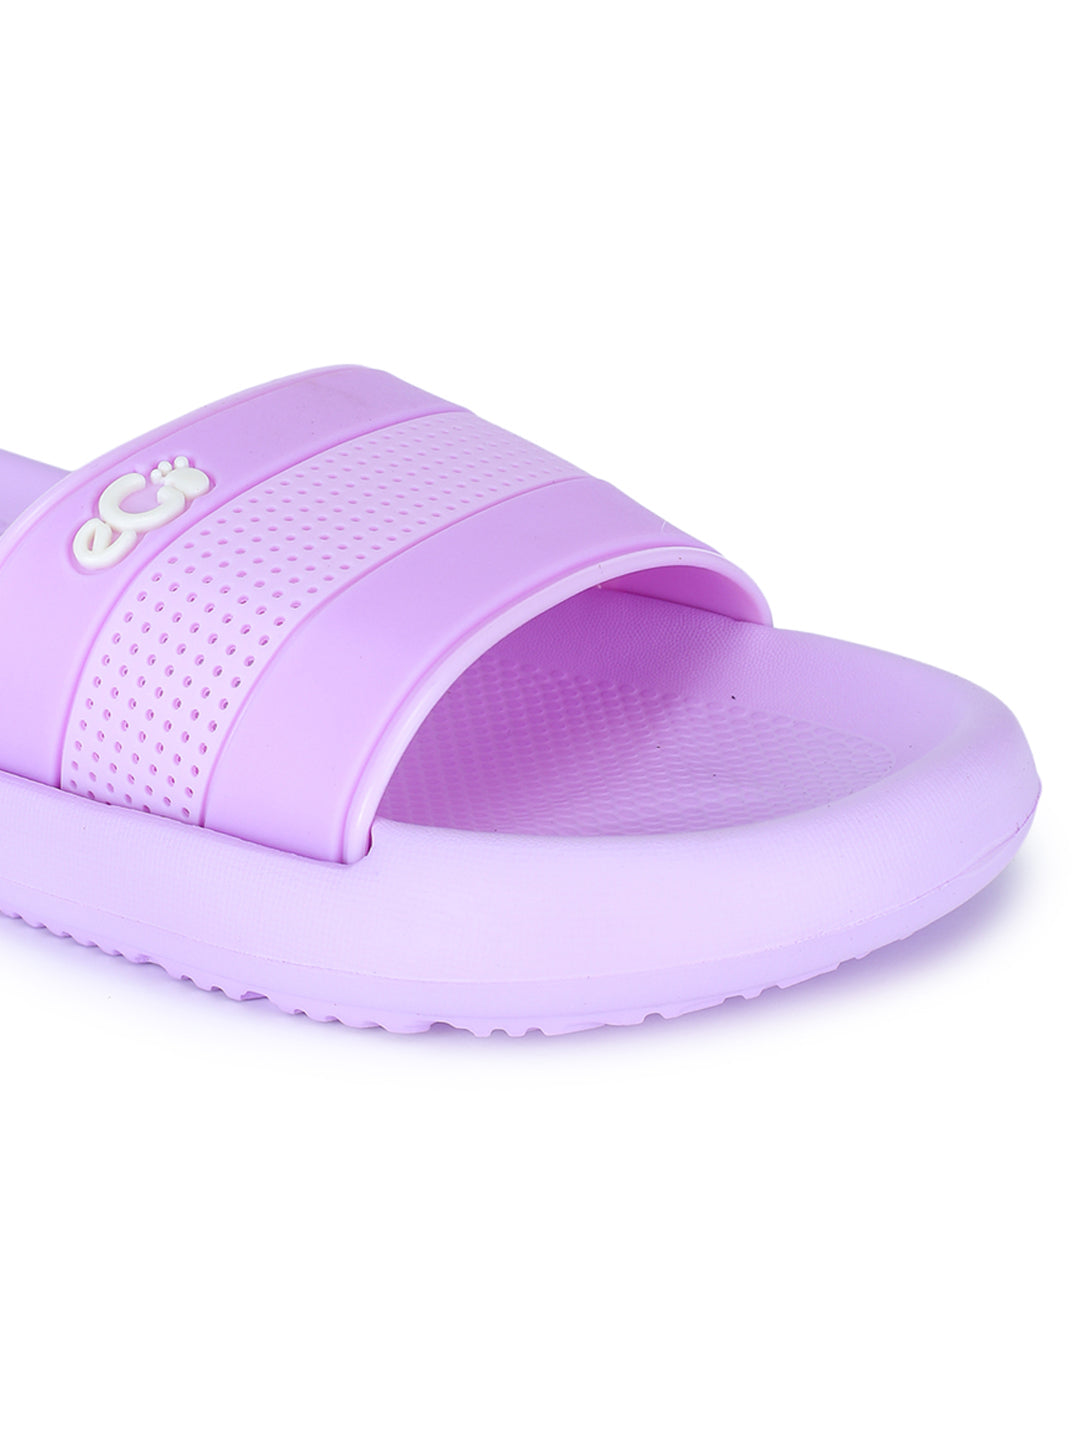 Footwear, Women Footwear, Purple Slides